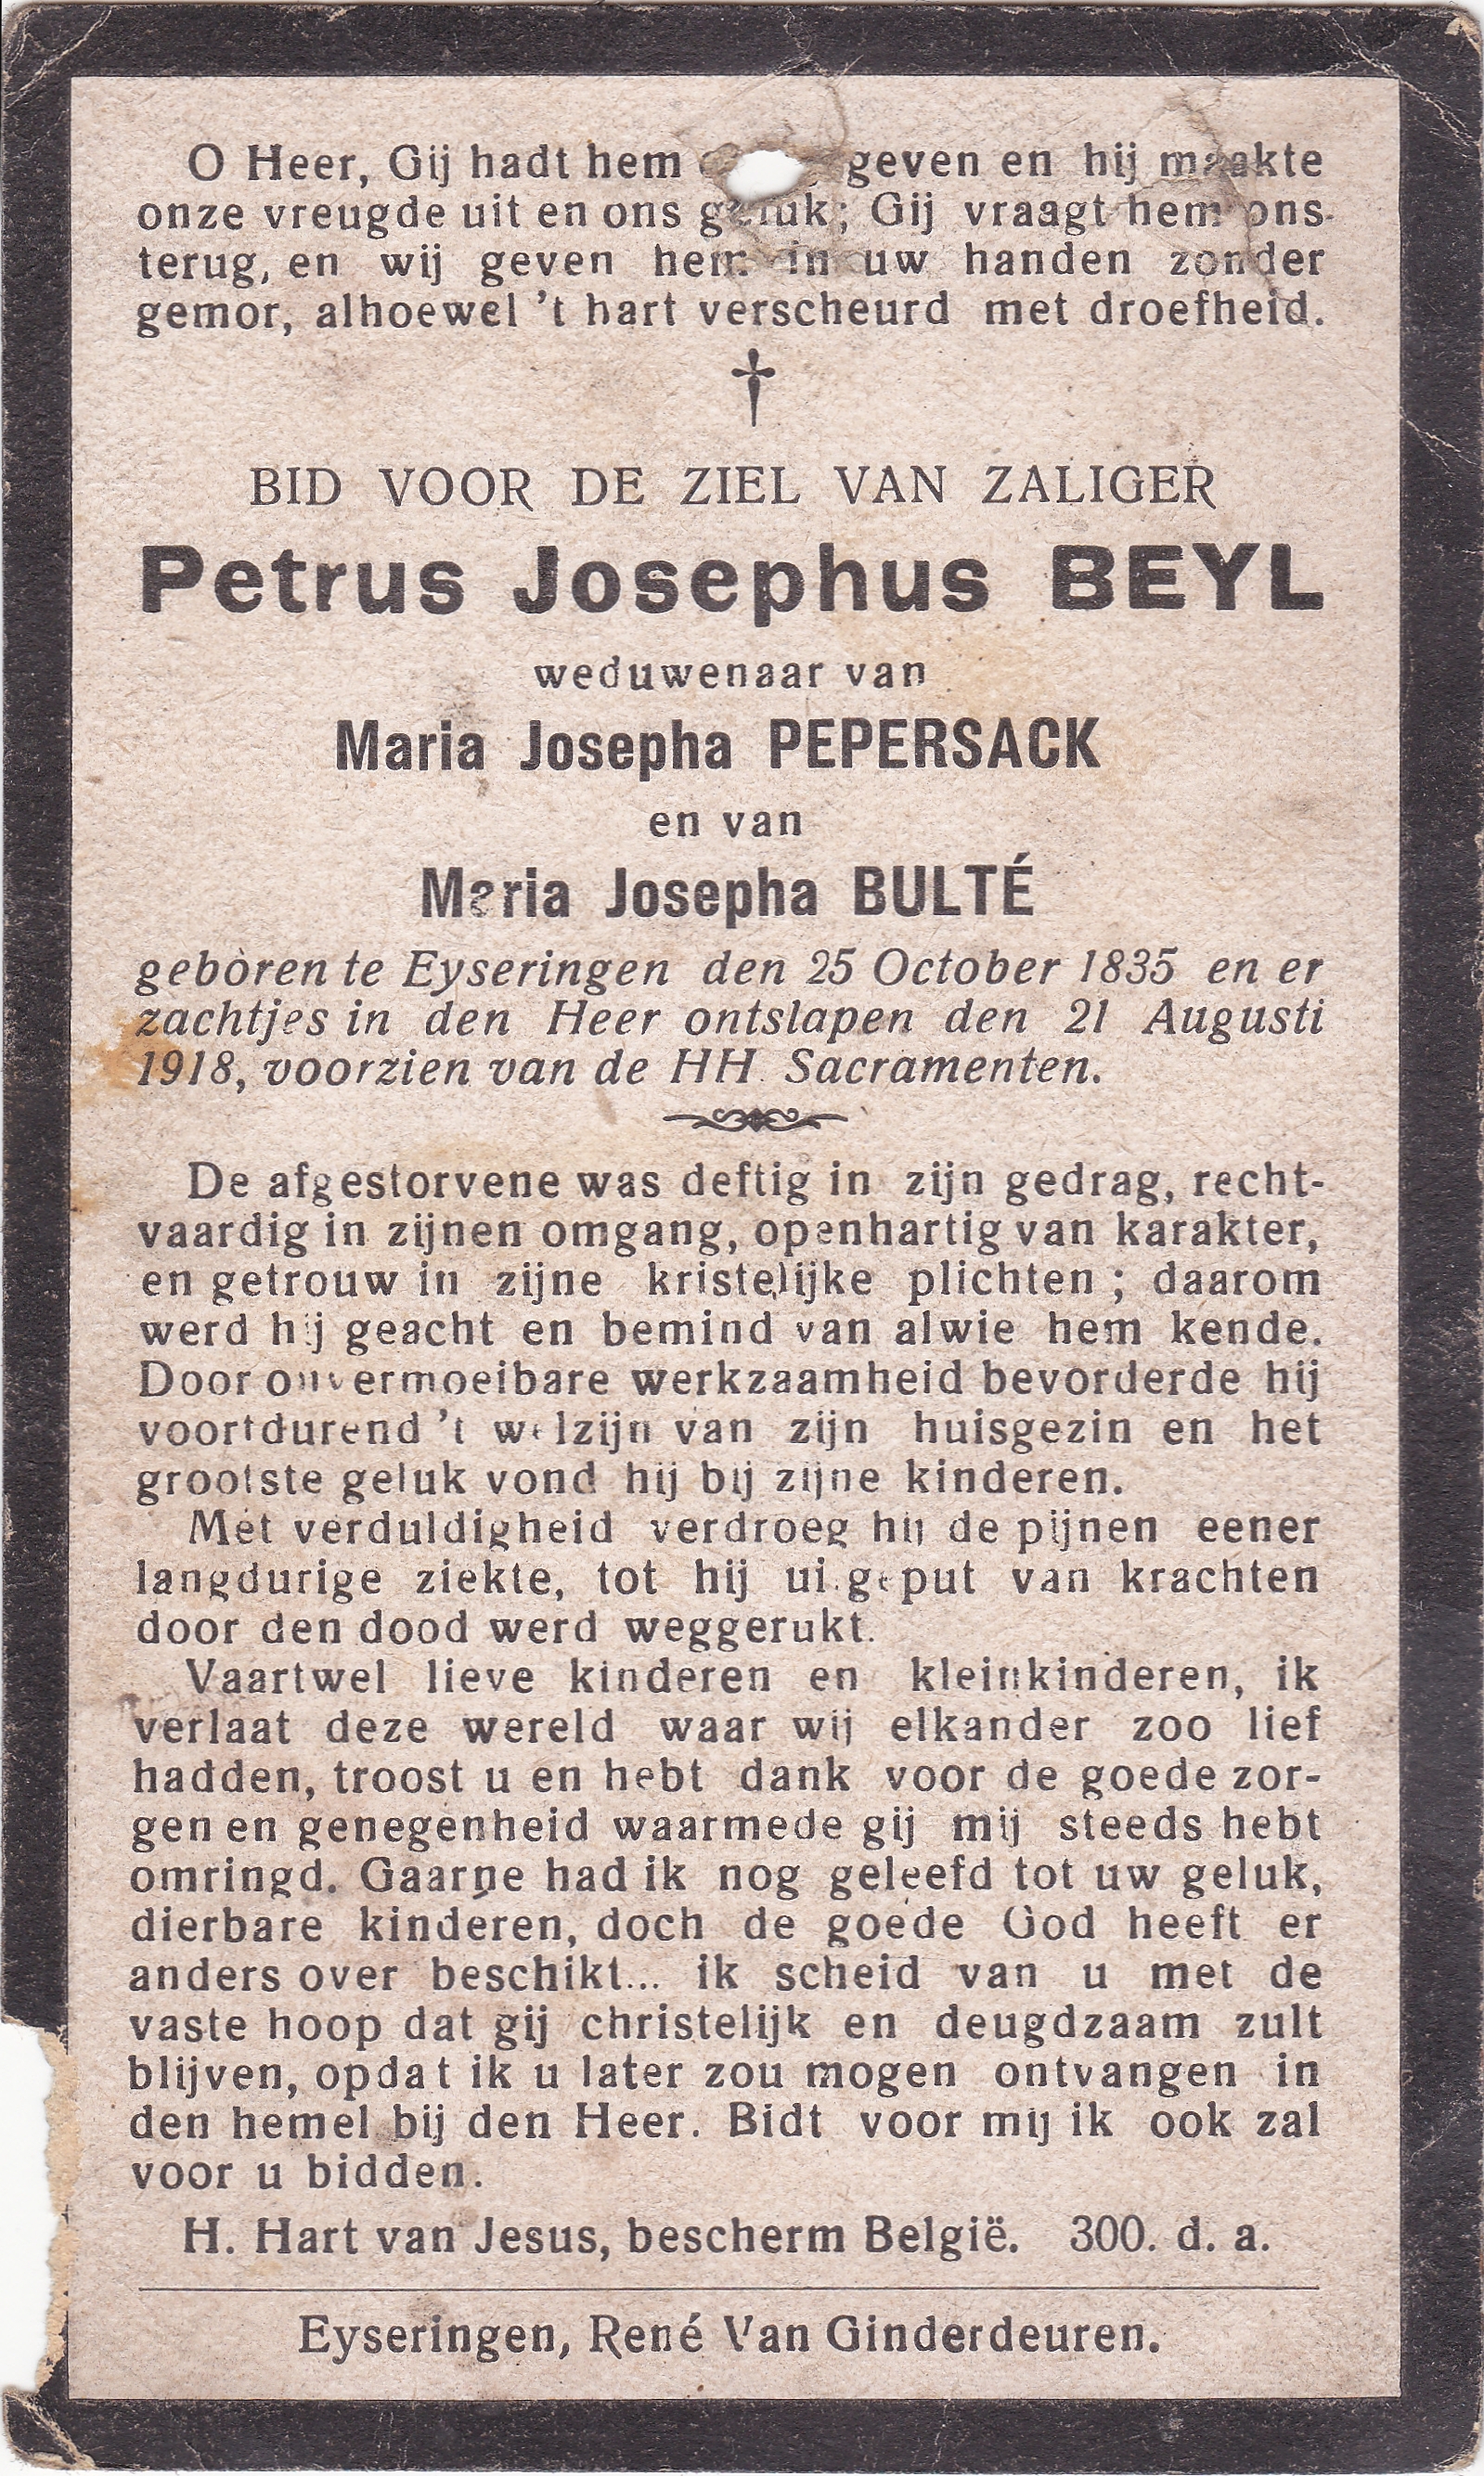 Beyl Petrus Josephus